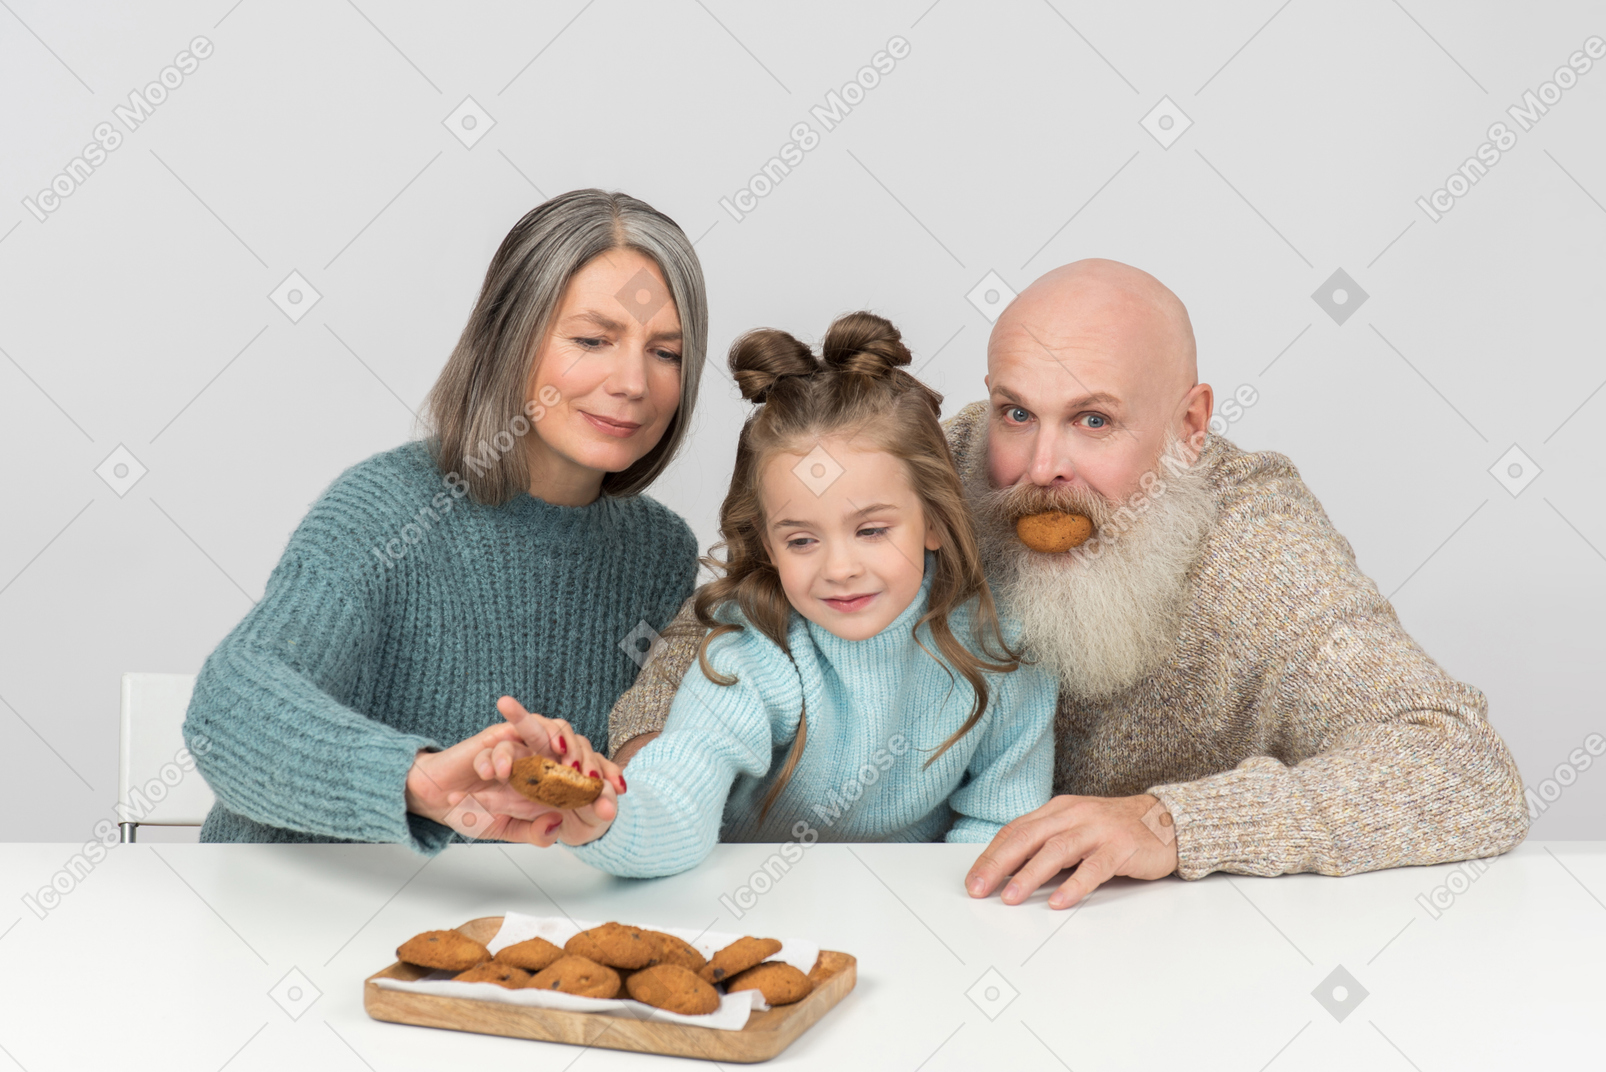 El abuelo no puede dejar de jugar y la abuela evita que el niño tome otra galleta.